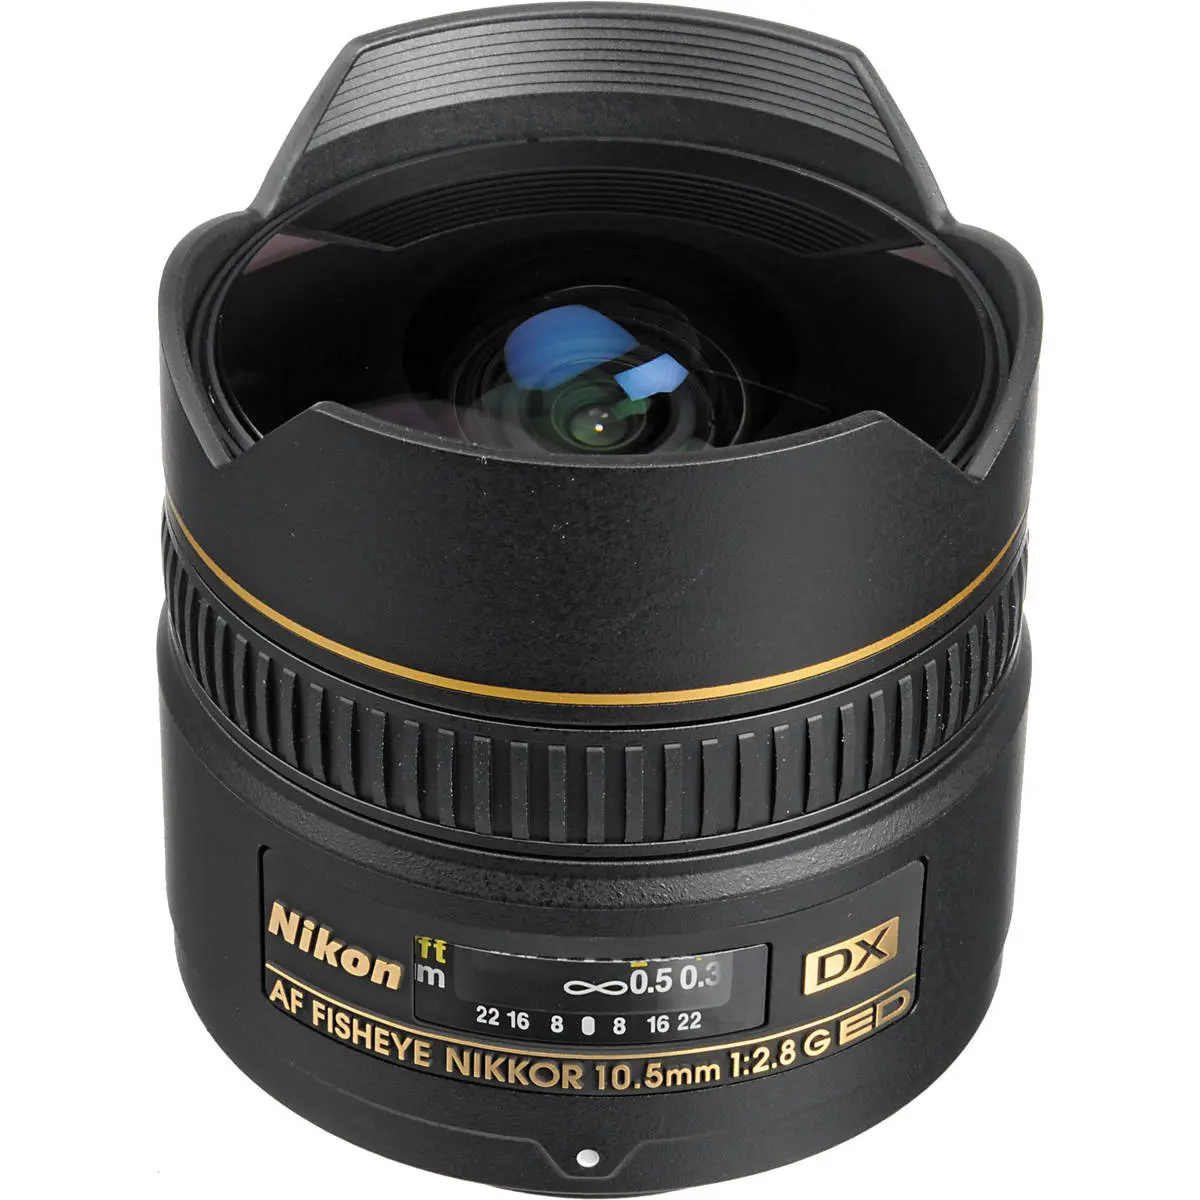 Main Image Nikon AF DX Fisheye-Nikkor 10.5mm f/2.8G ED